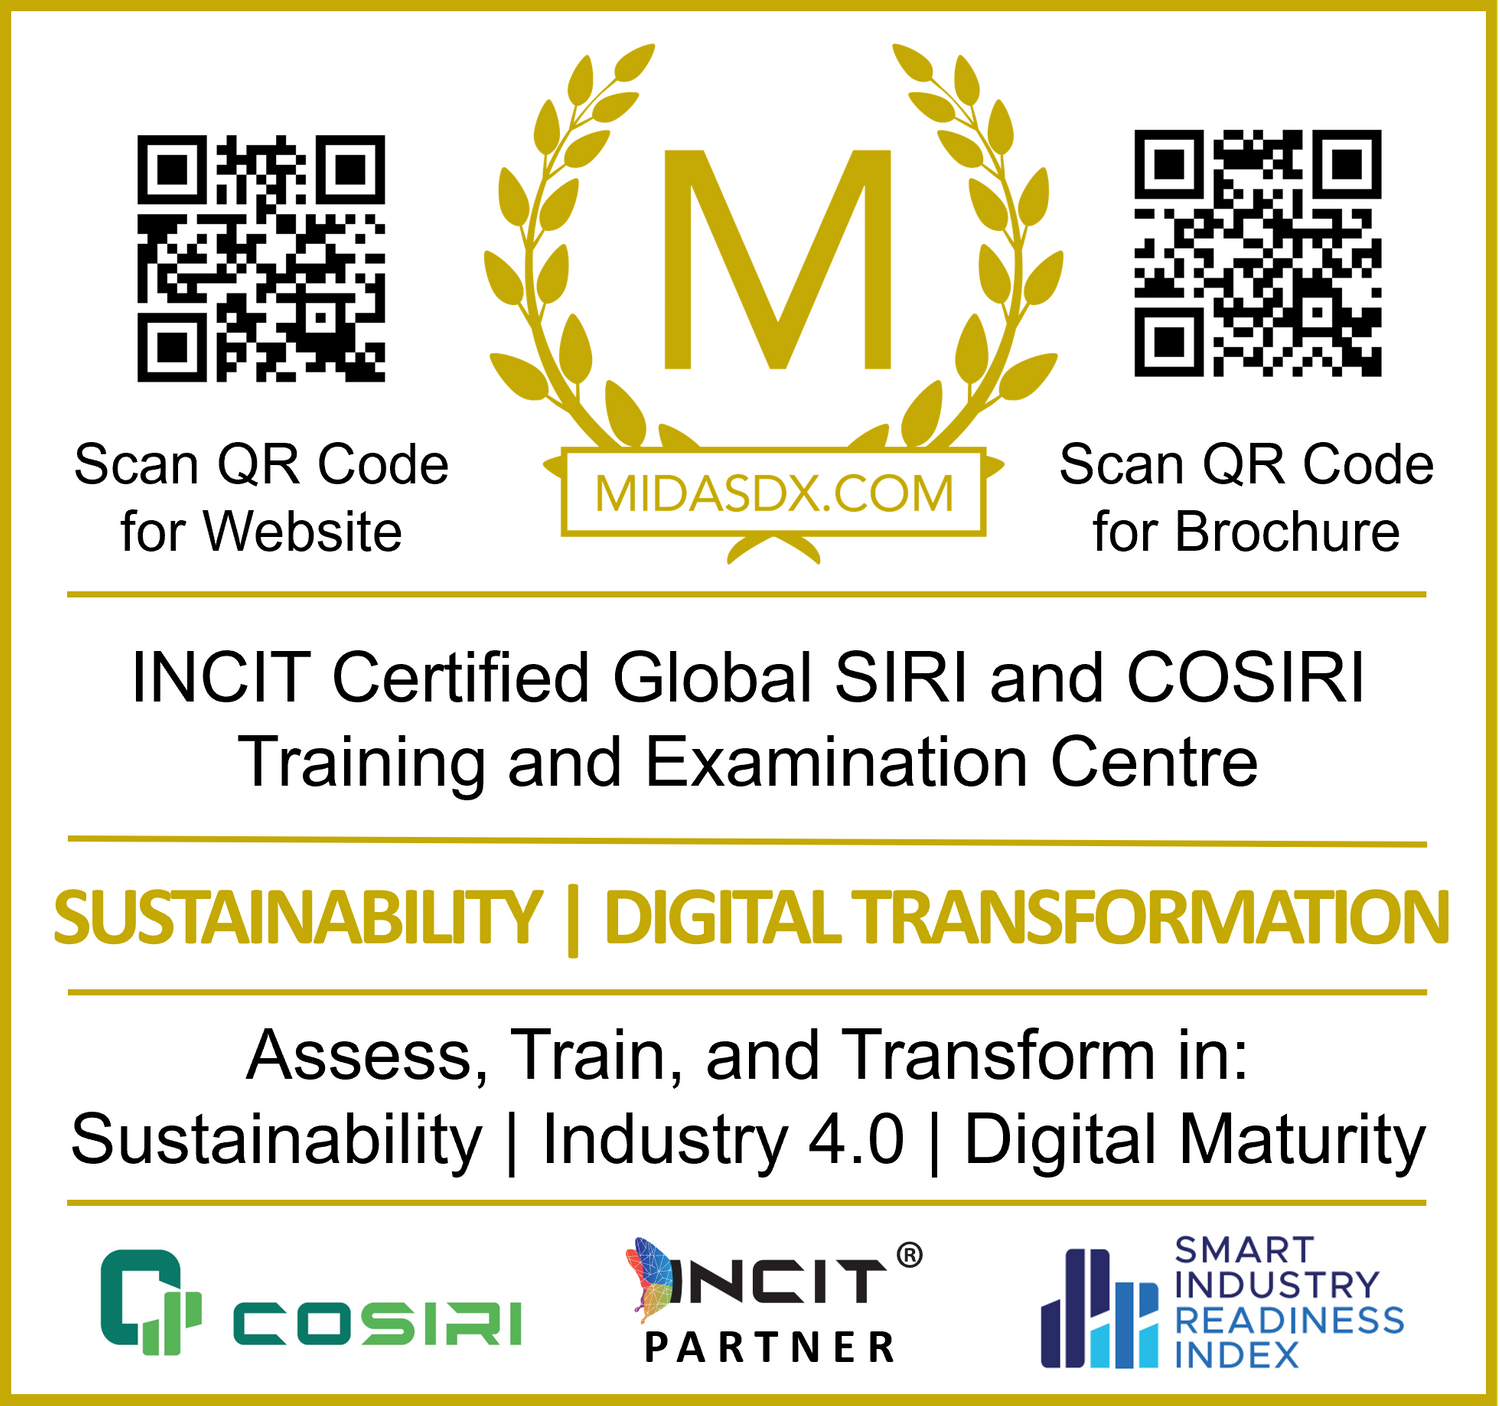 MidasDX.com SIRI & COSIRI Training